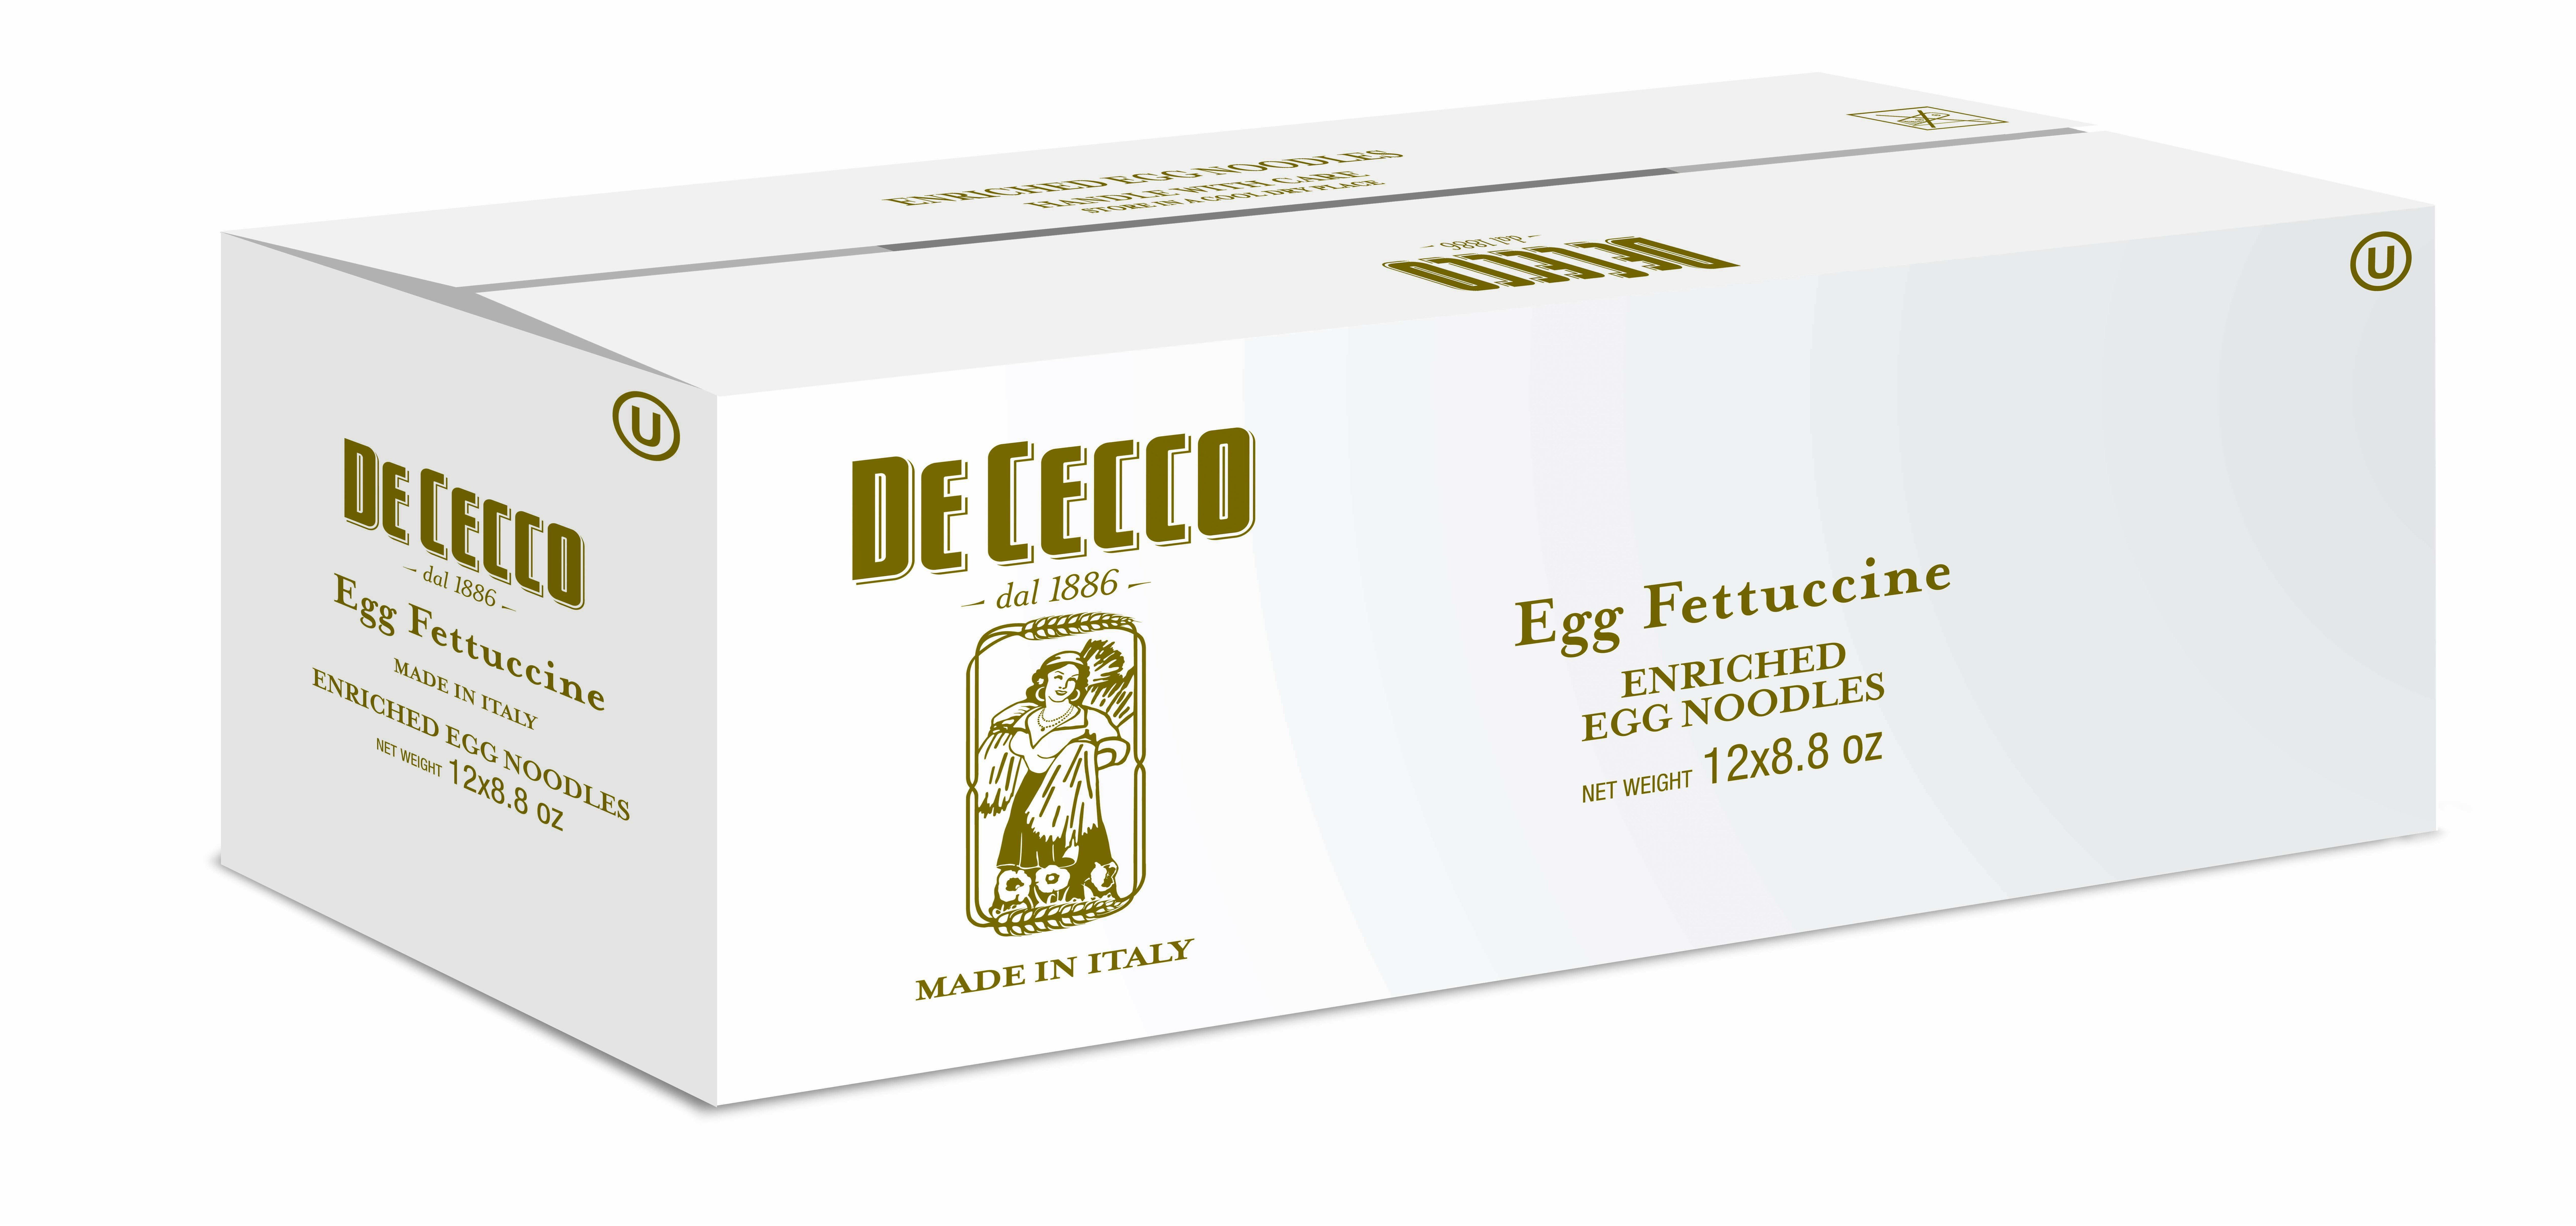 De Cecco No. 103 Egg Fettuccini 8.8 Oz. Box, PK12